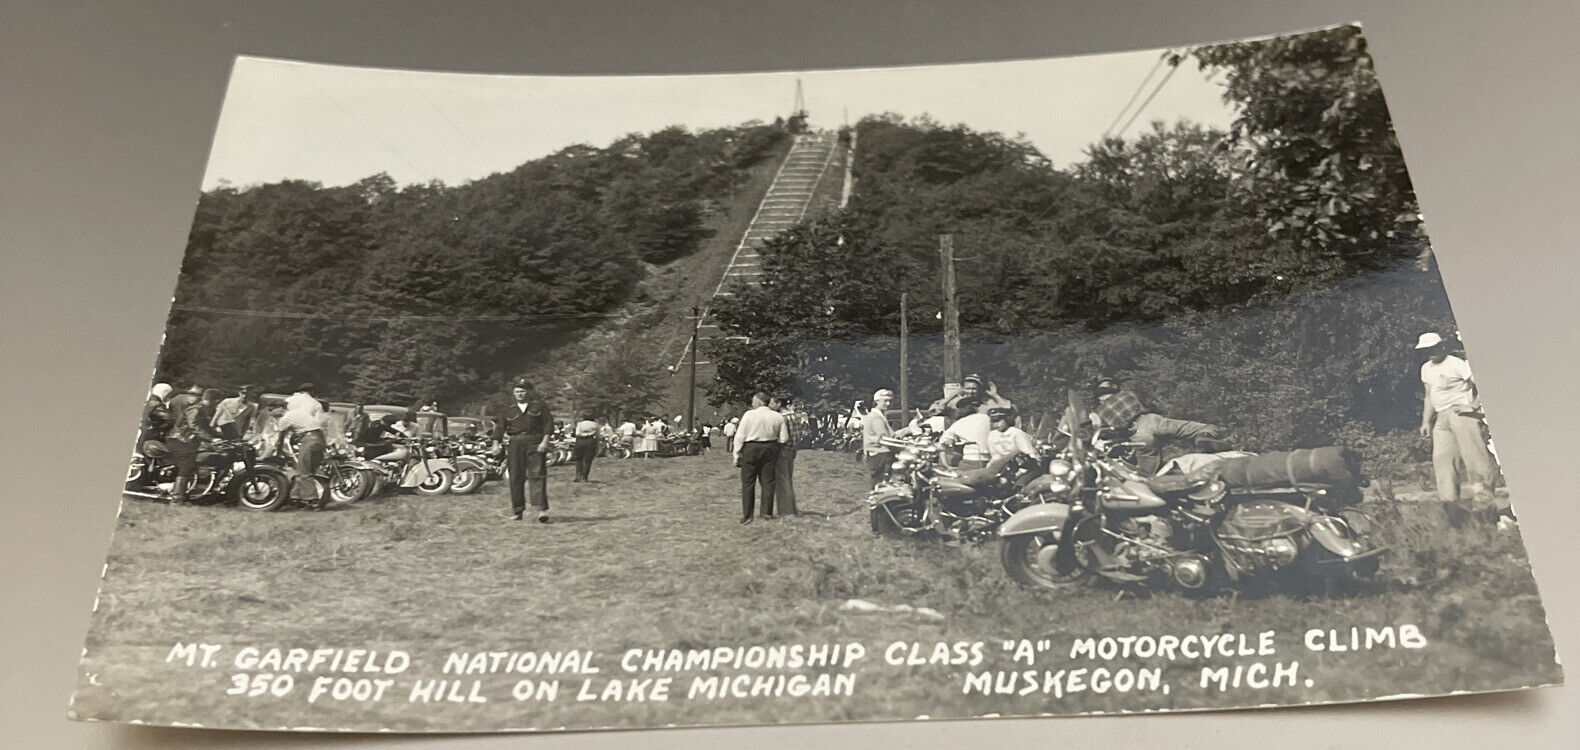 MUSKEGON Michigan -Post Card- Real Photo Mt. Garfield National Motorcycle Climb.